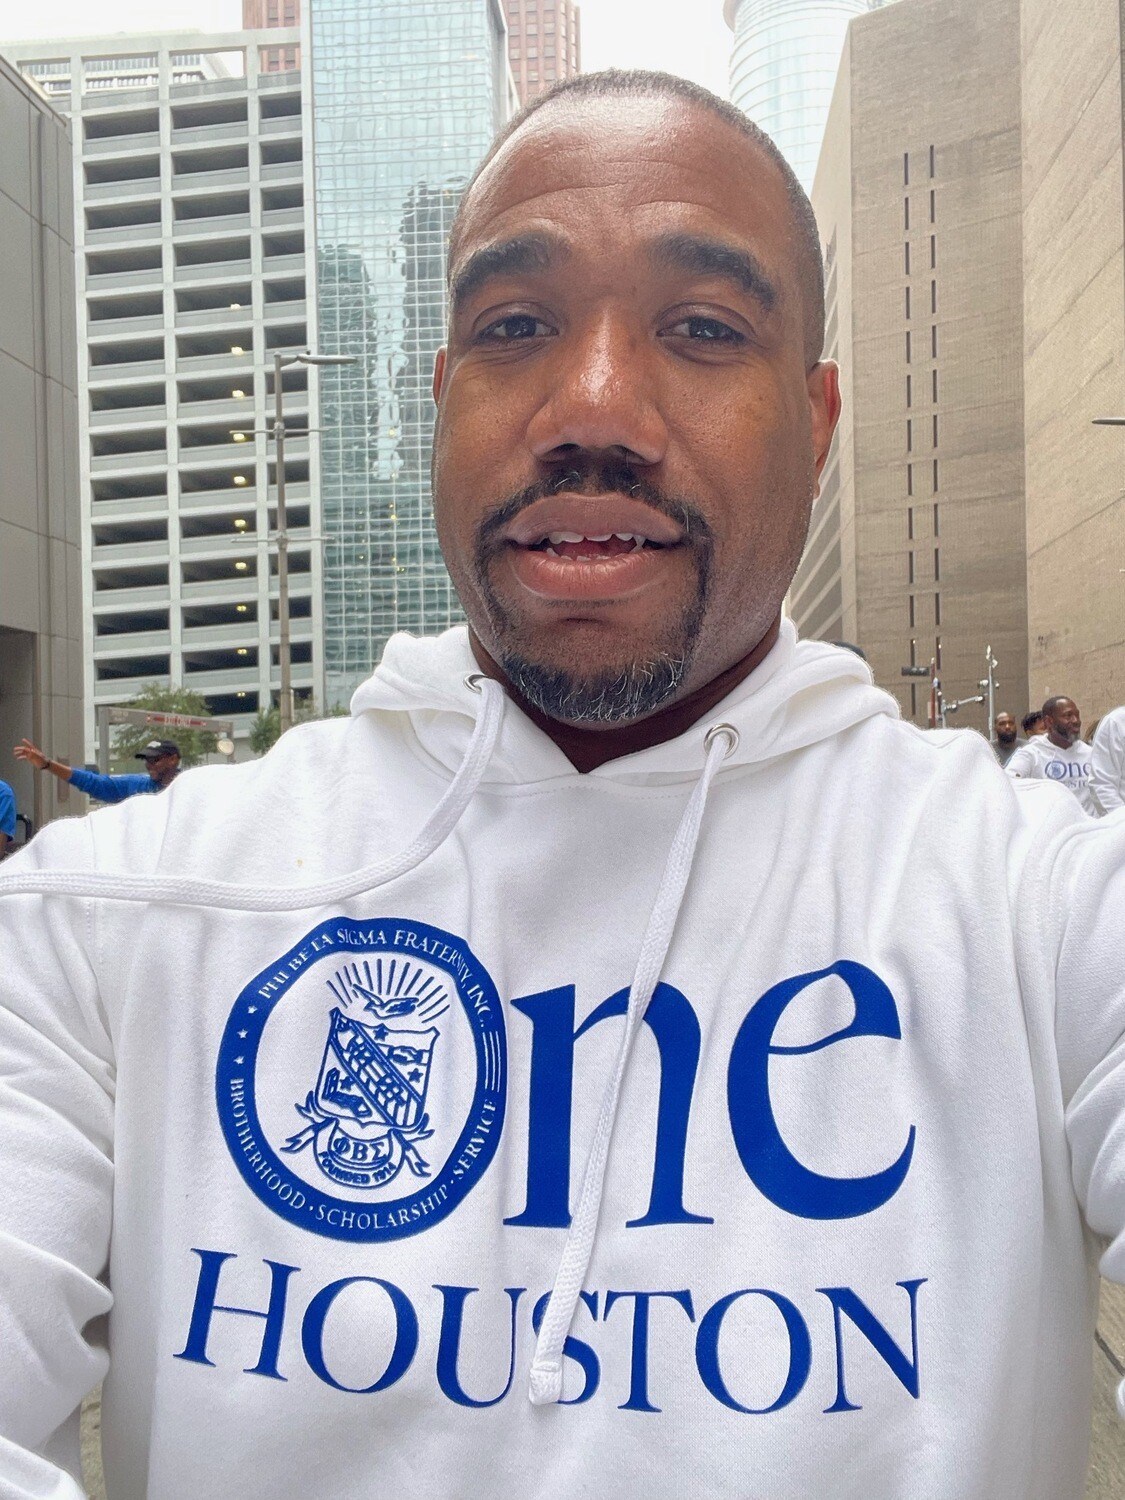 One Houston Hooded Sweatshirt